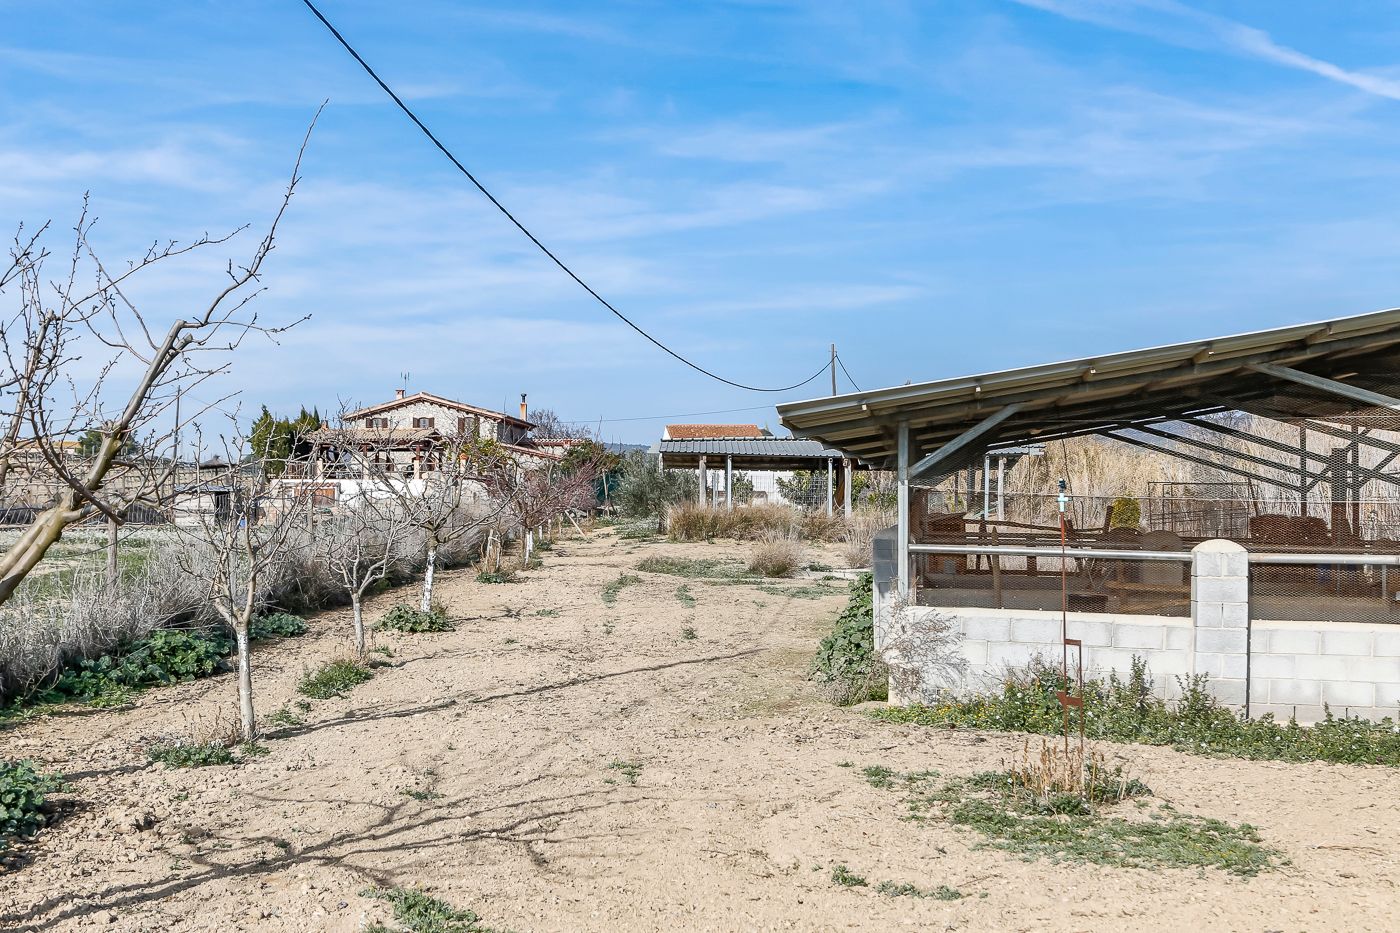 Spektakulär renoviertes Bauernhaus in der Nähe von Vilafranca del Penedès